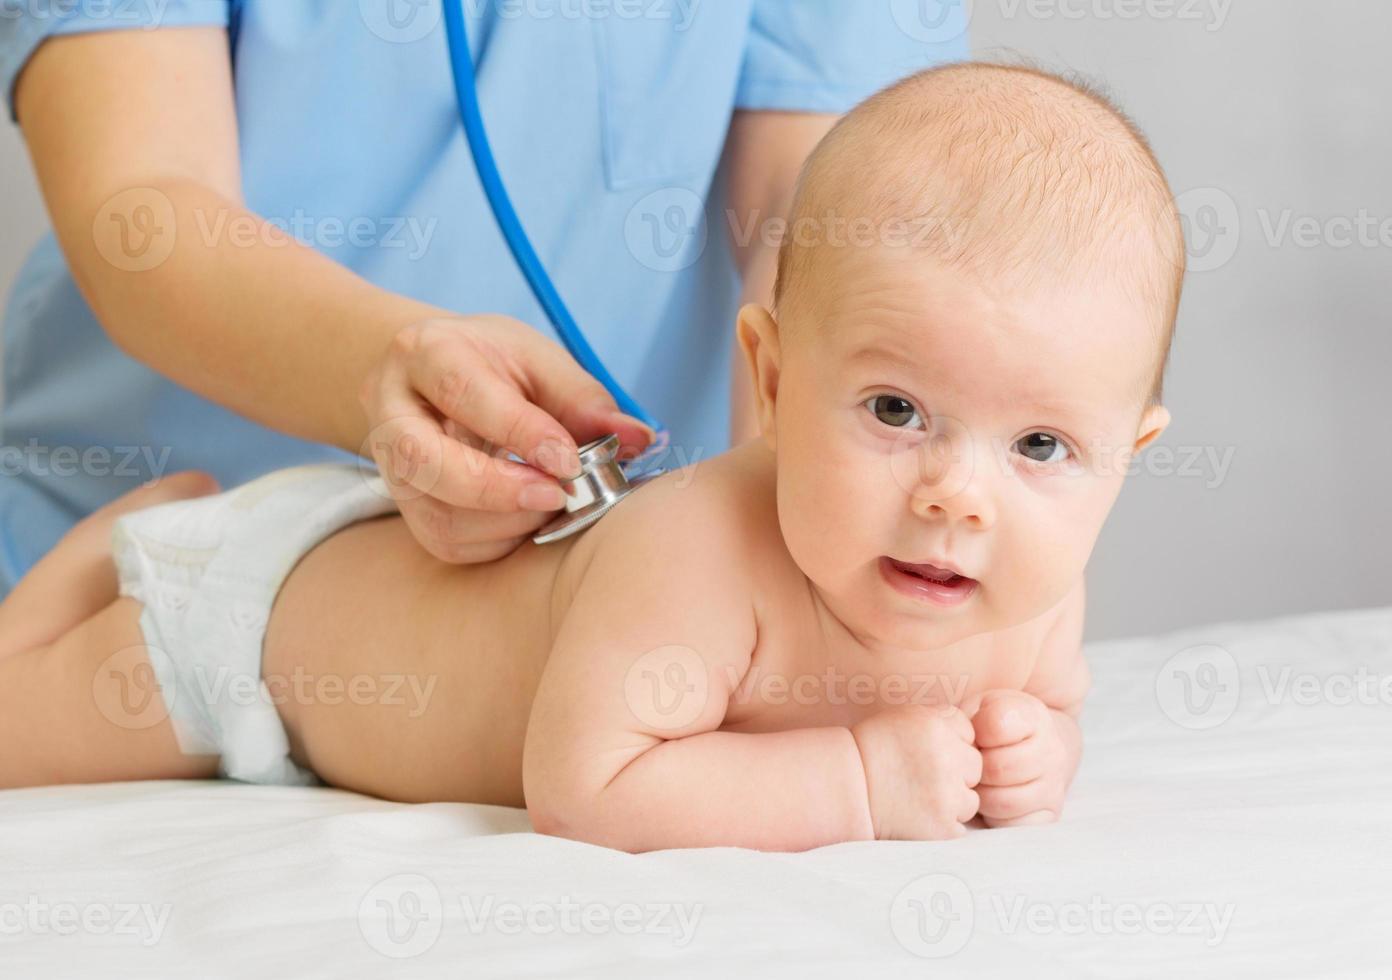 arts met een stethoscoop luister baby foto